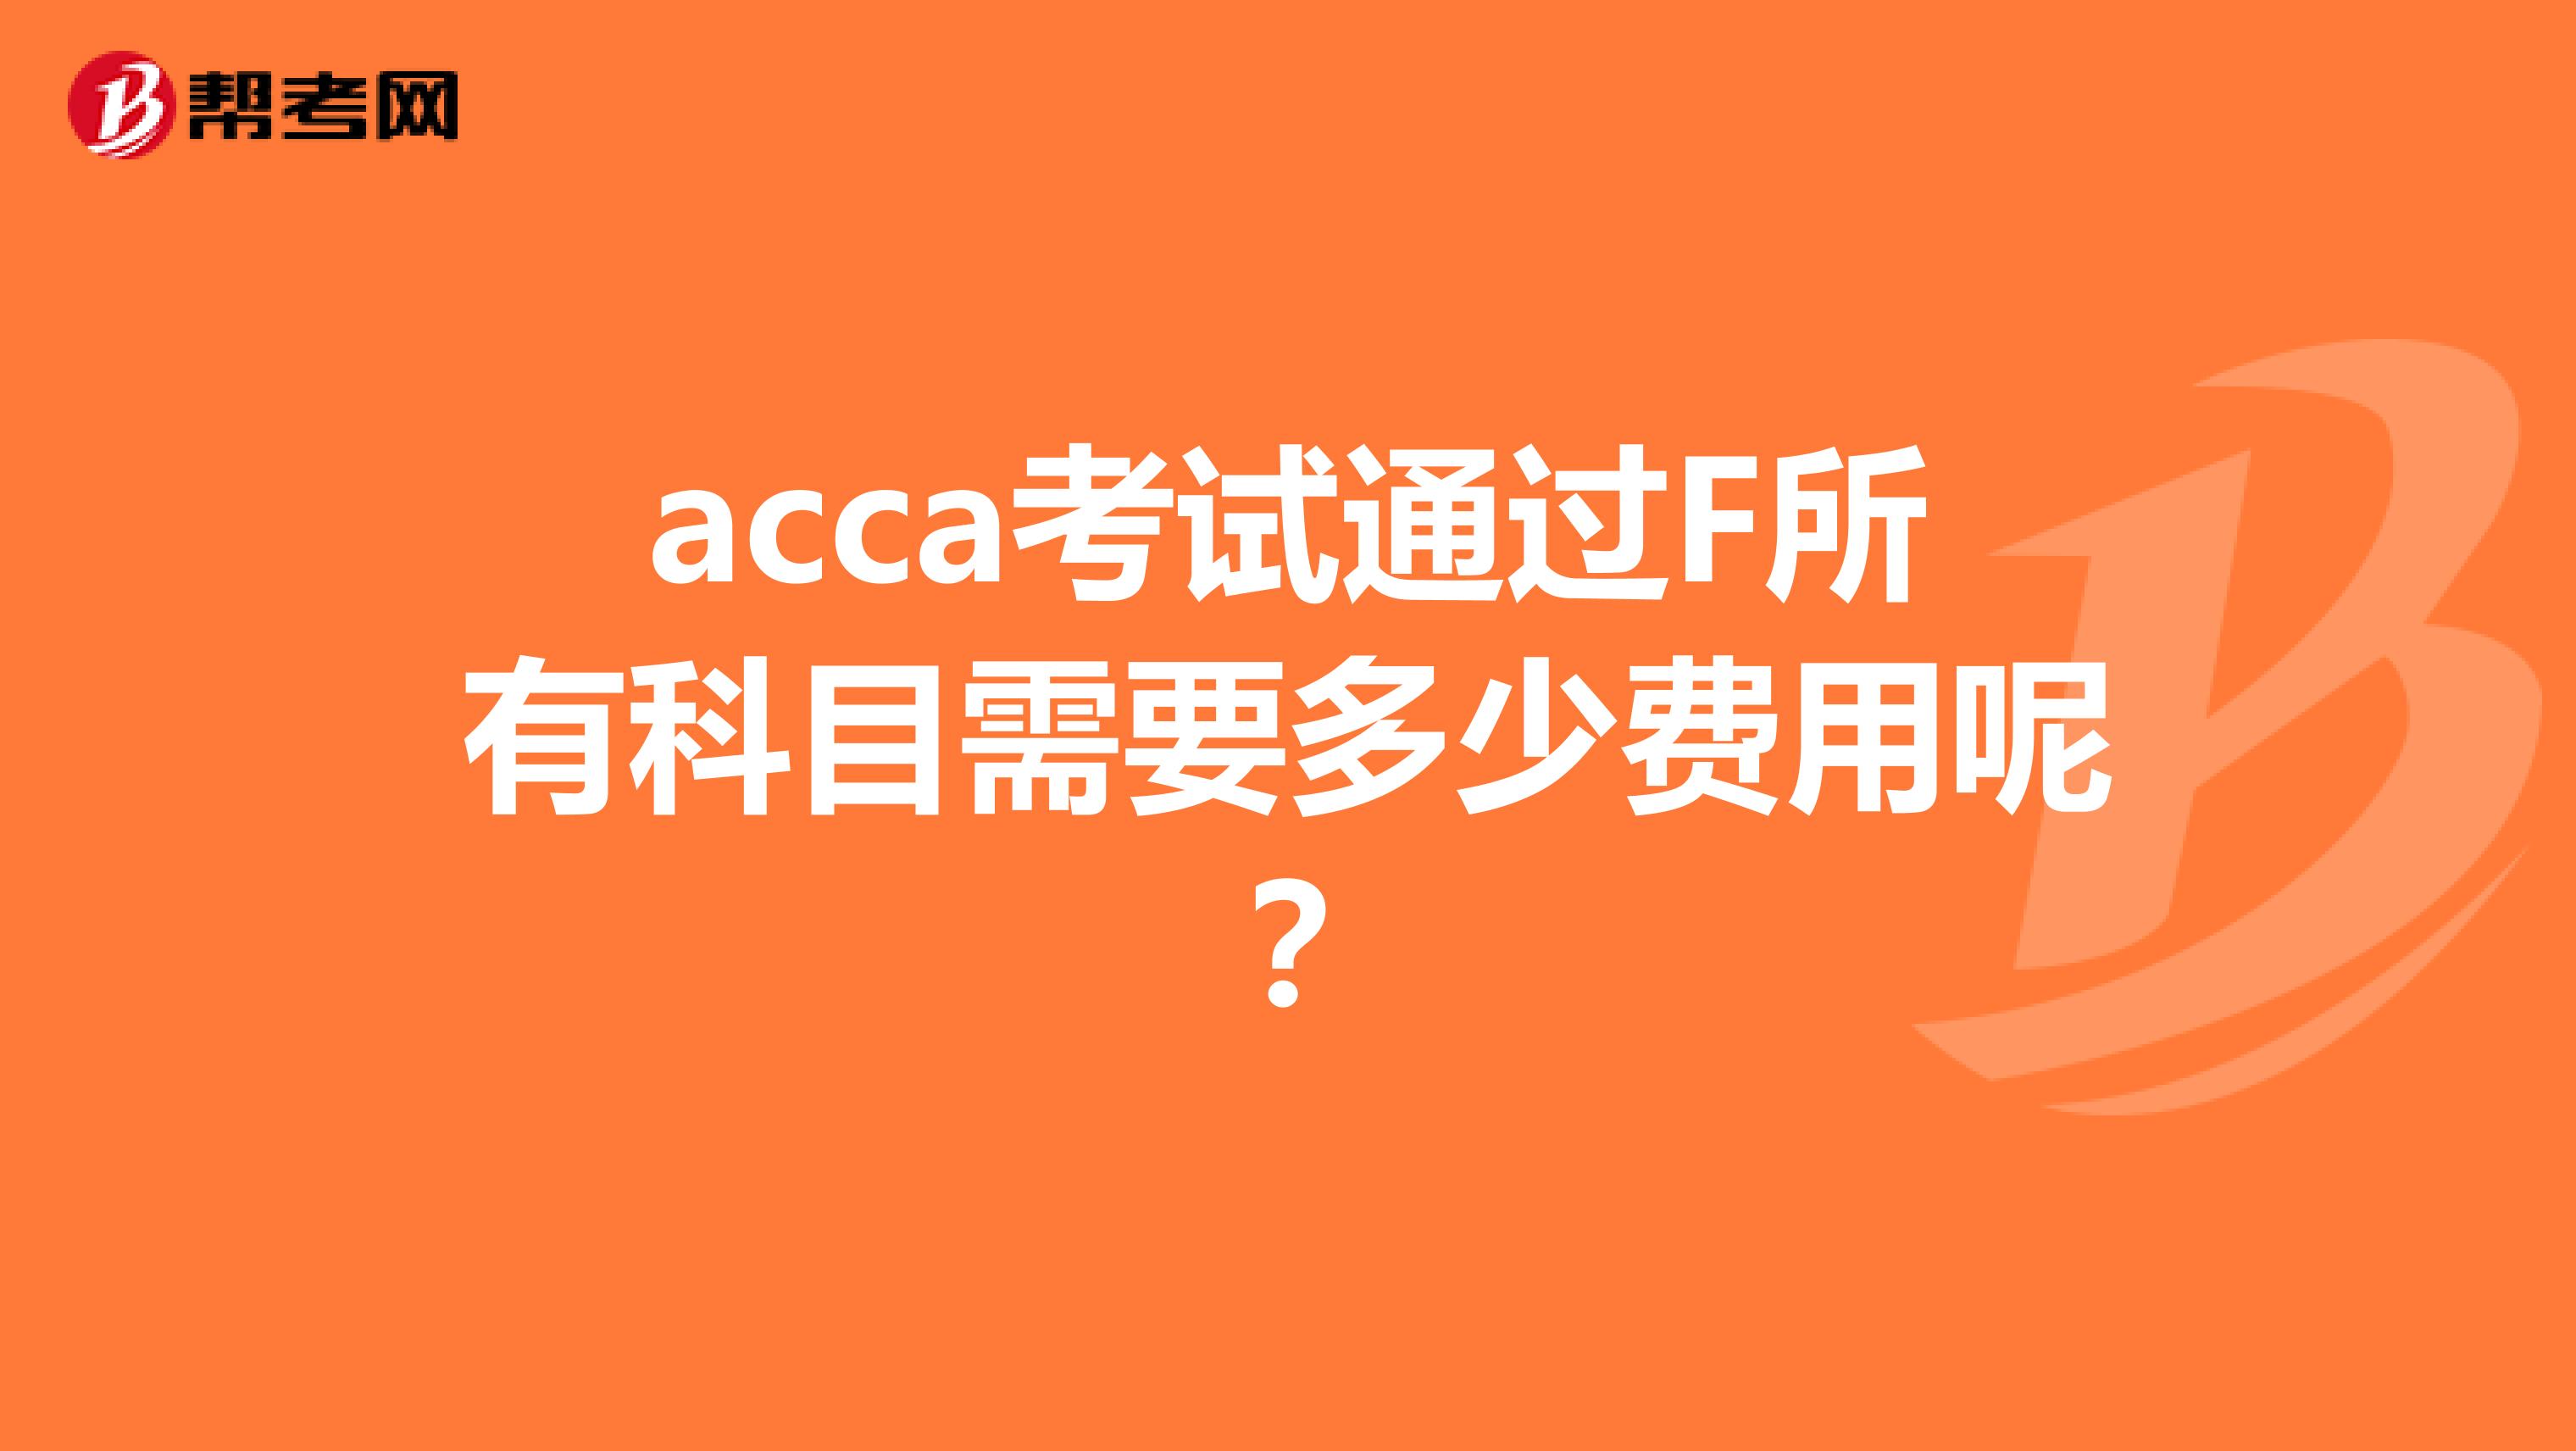 acca考试通过F所有科目需要多少费用呢？